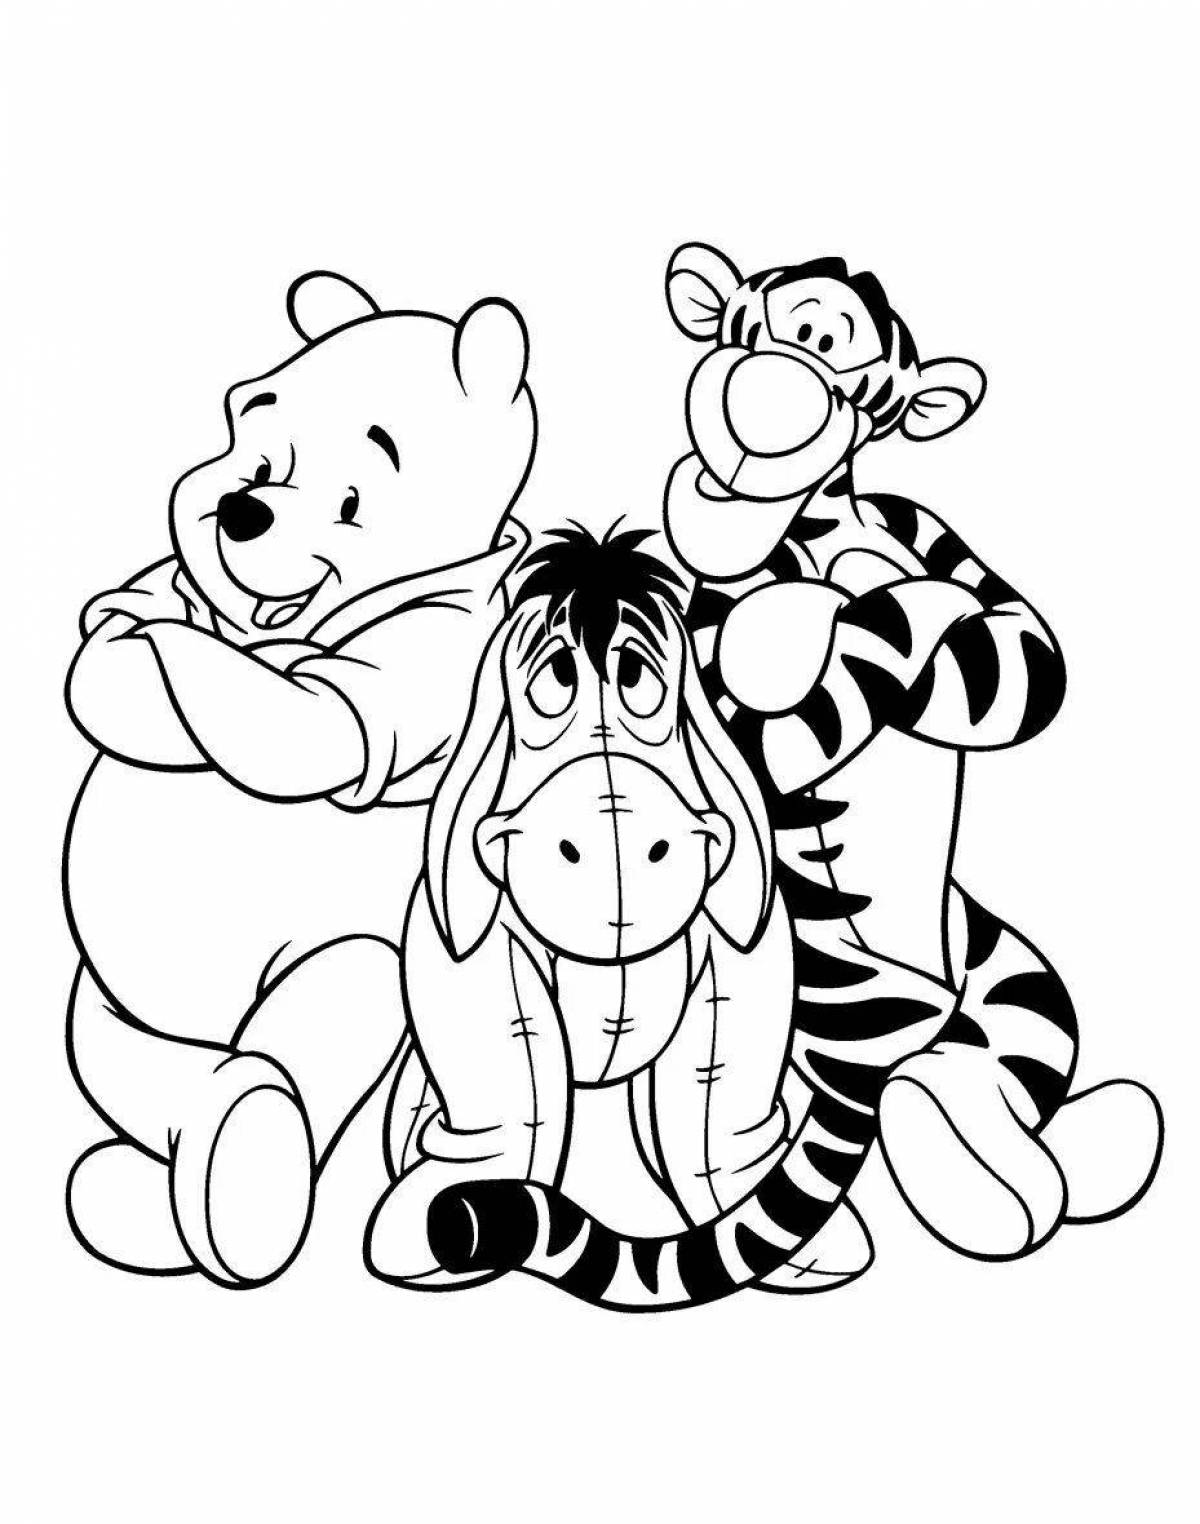 Playtime coloring page winnie the pooh для детей